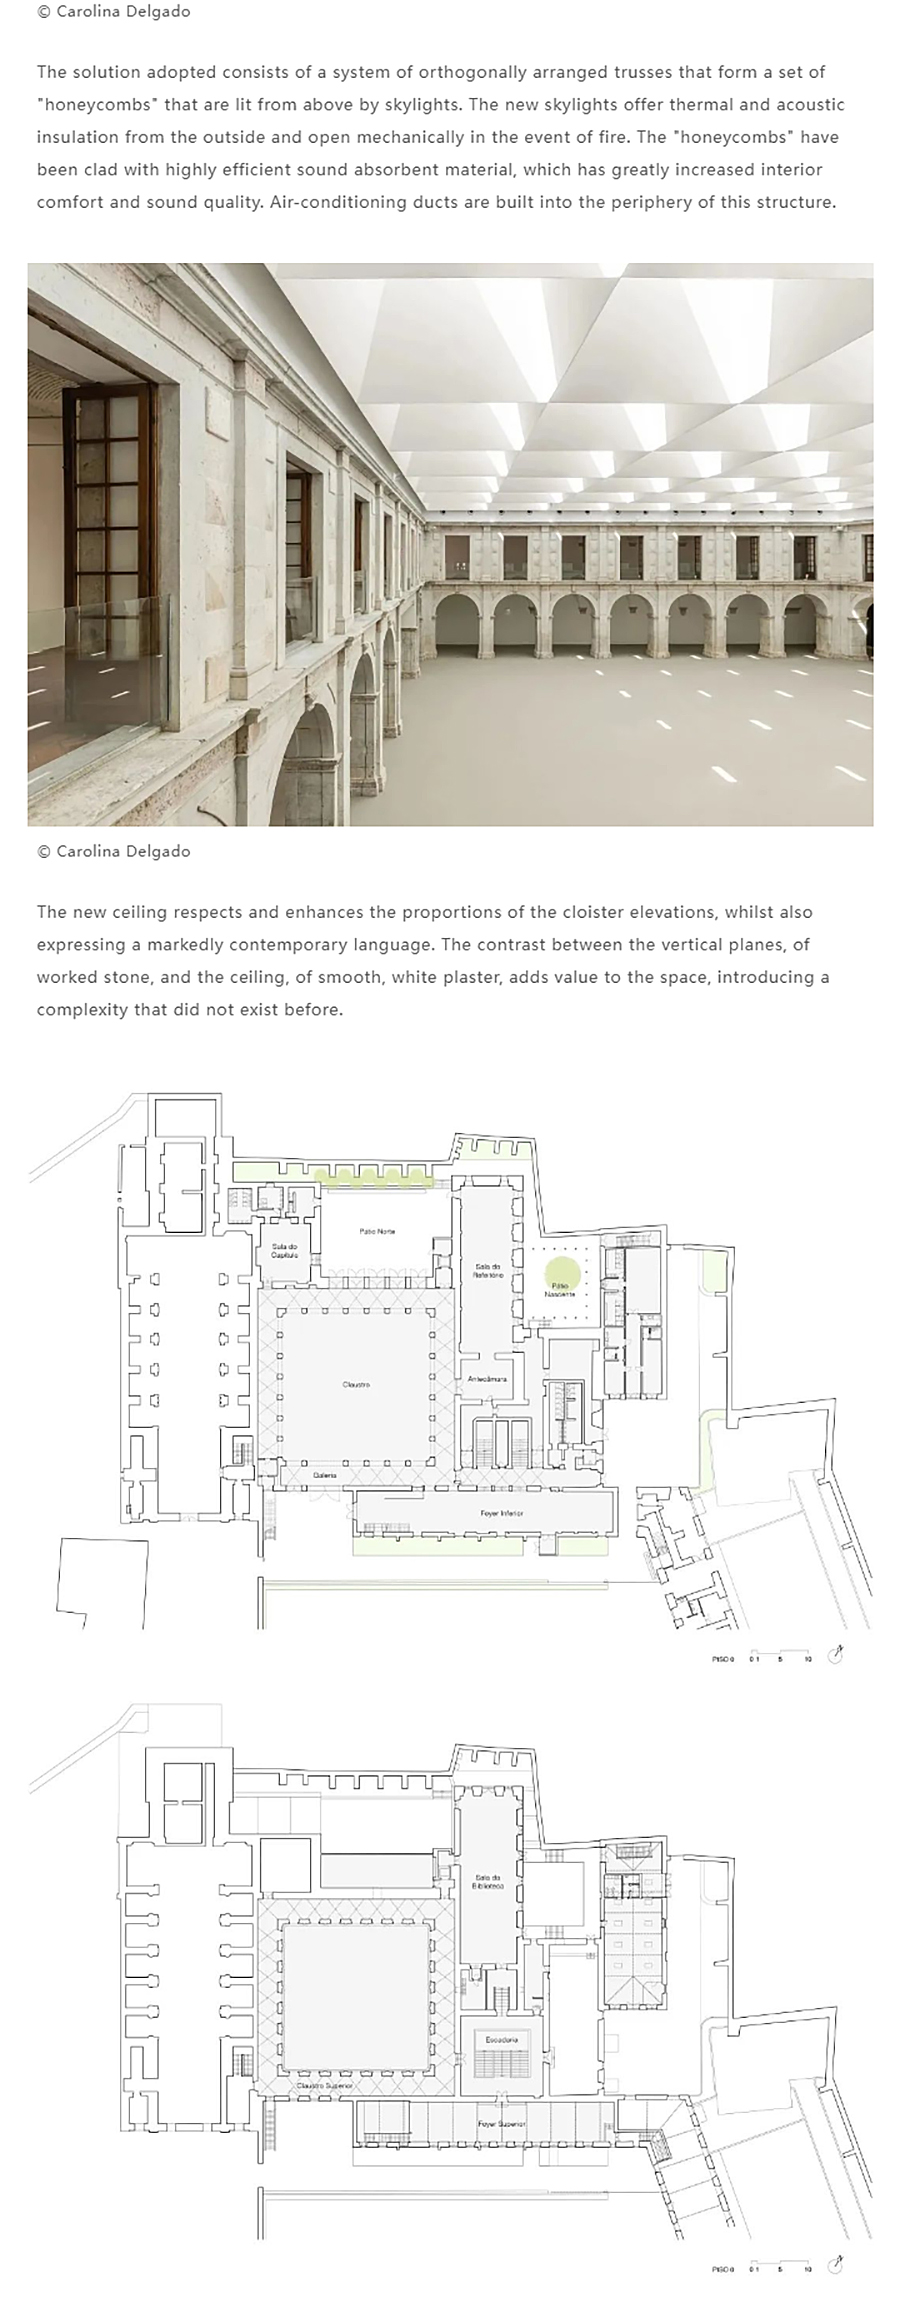 Renewal-Zone：贝亚托修道院活动中心︱历史建筑群更新_0013_图层-14 拷贝.jpg